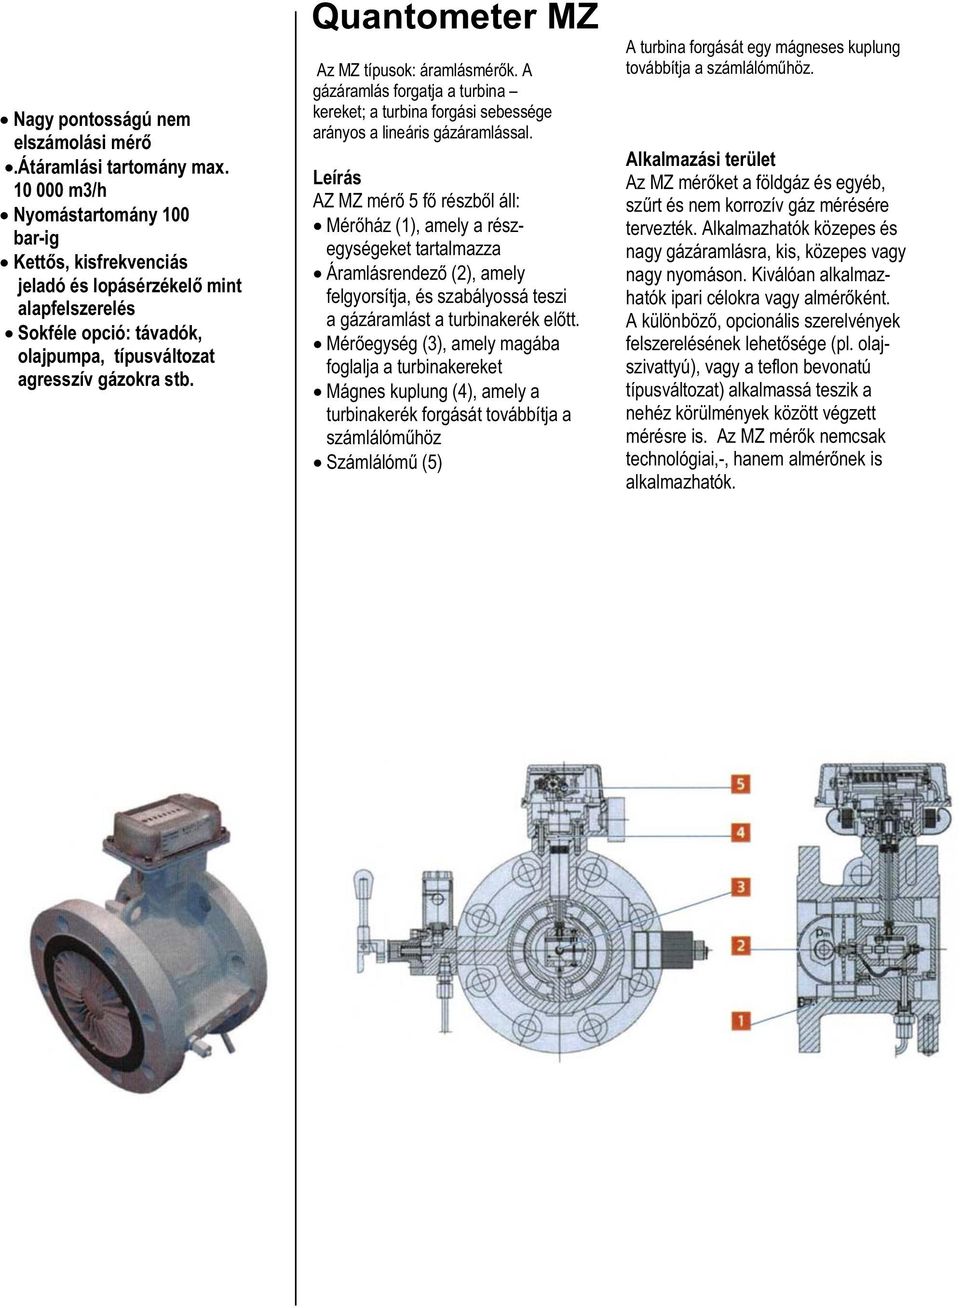 Quantometer MZ Az MZ típusok: áramlásmérők. A gázáramlás forgatja a turbina kereket; a turbina forgási sebessége arányos a lineáris gázáramlással.